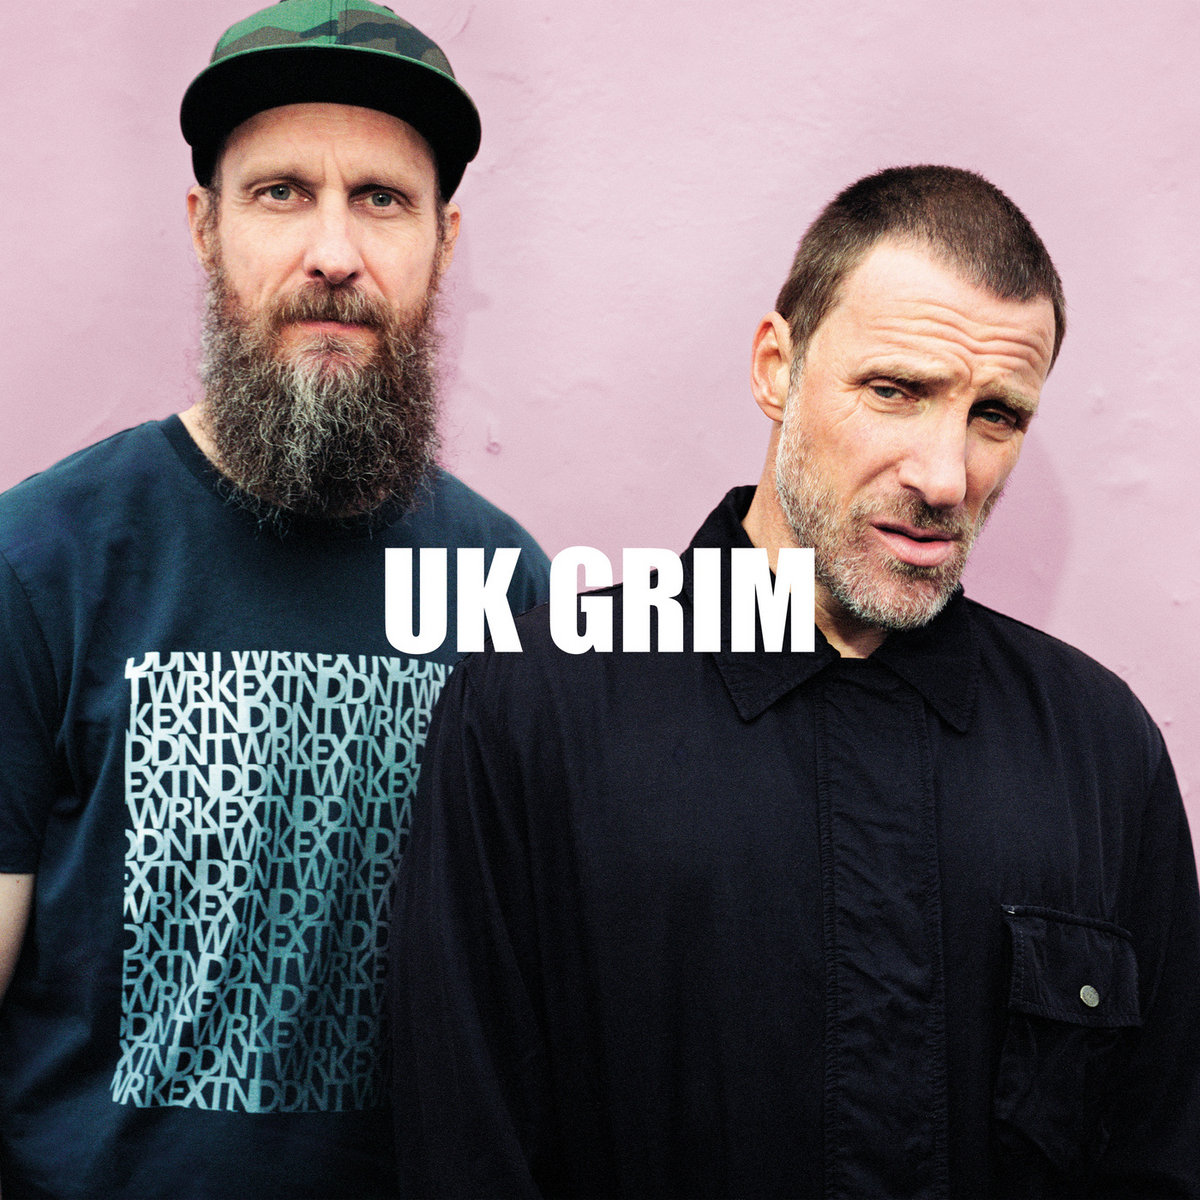 Sleaford Mods – UK GRIM album artwork